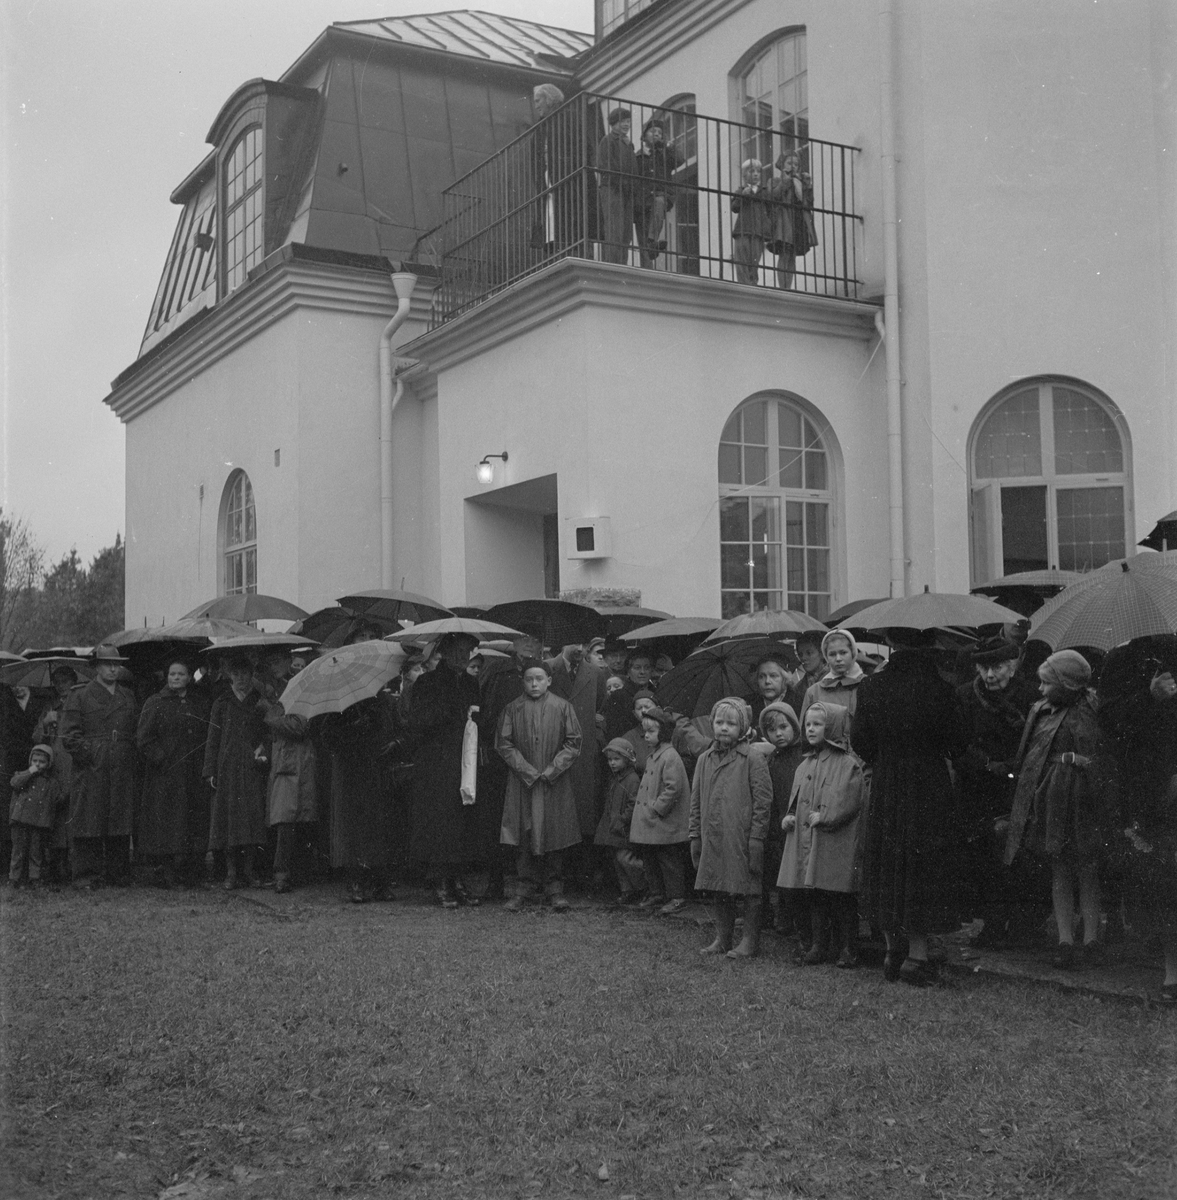 Vindhemskyrkan, invigning av klockstapeln, Uppsala, november 1955